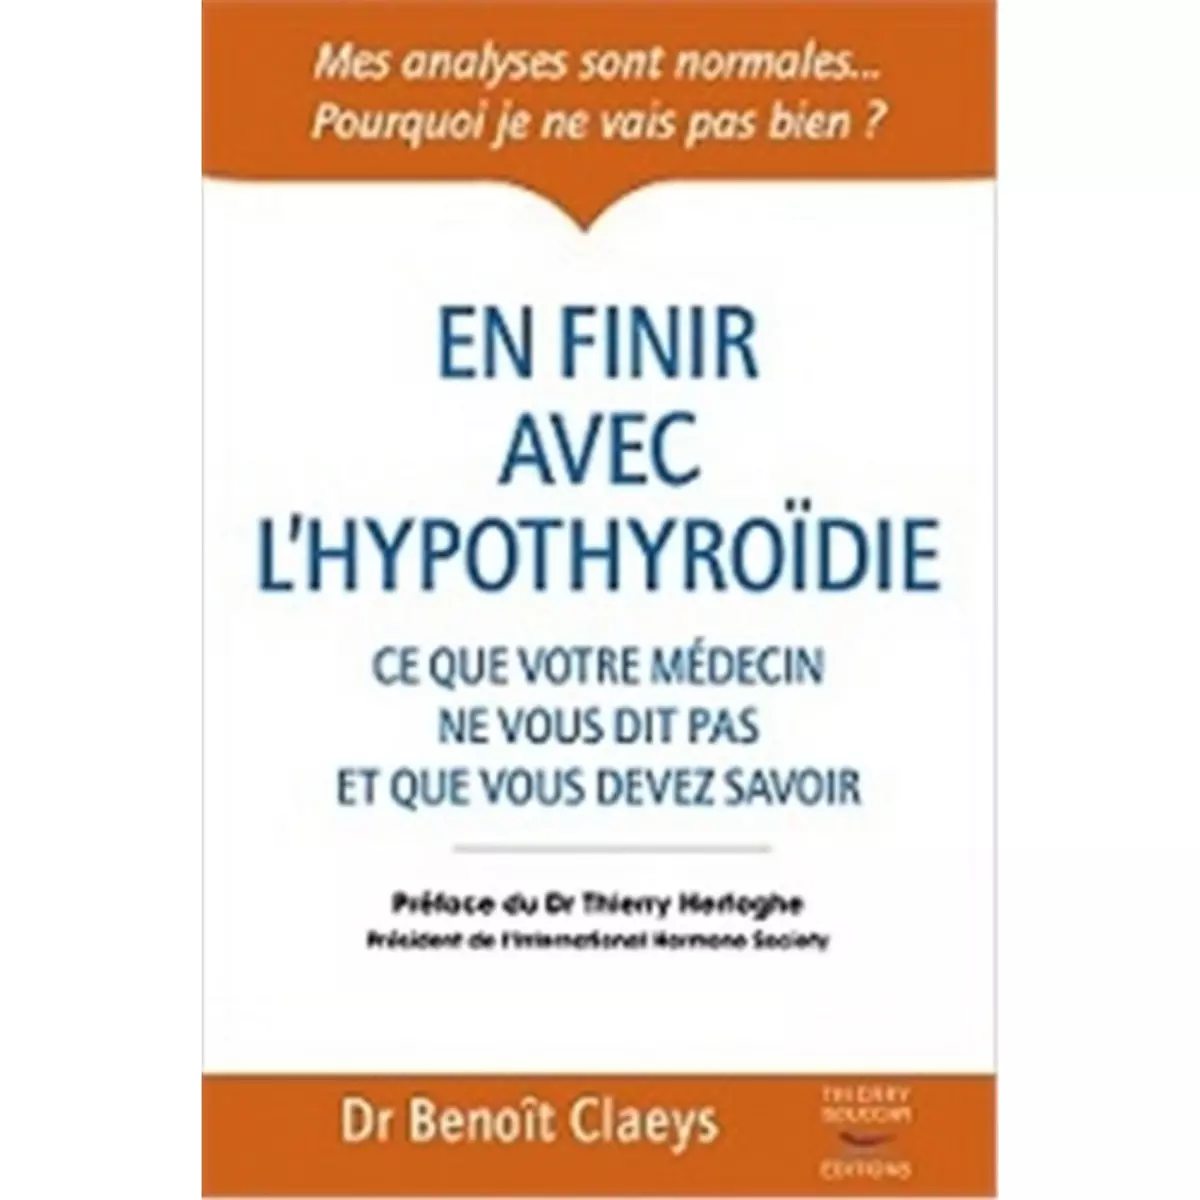  EN FINIR AVEC L'HYPOTHYROIDIE, Claeys Benoît